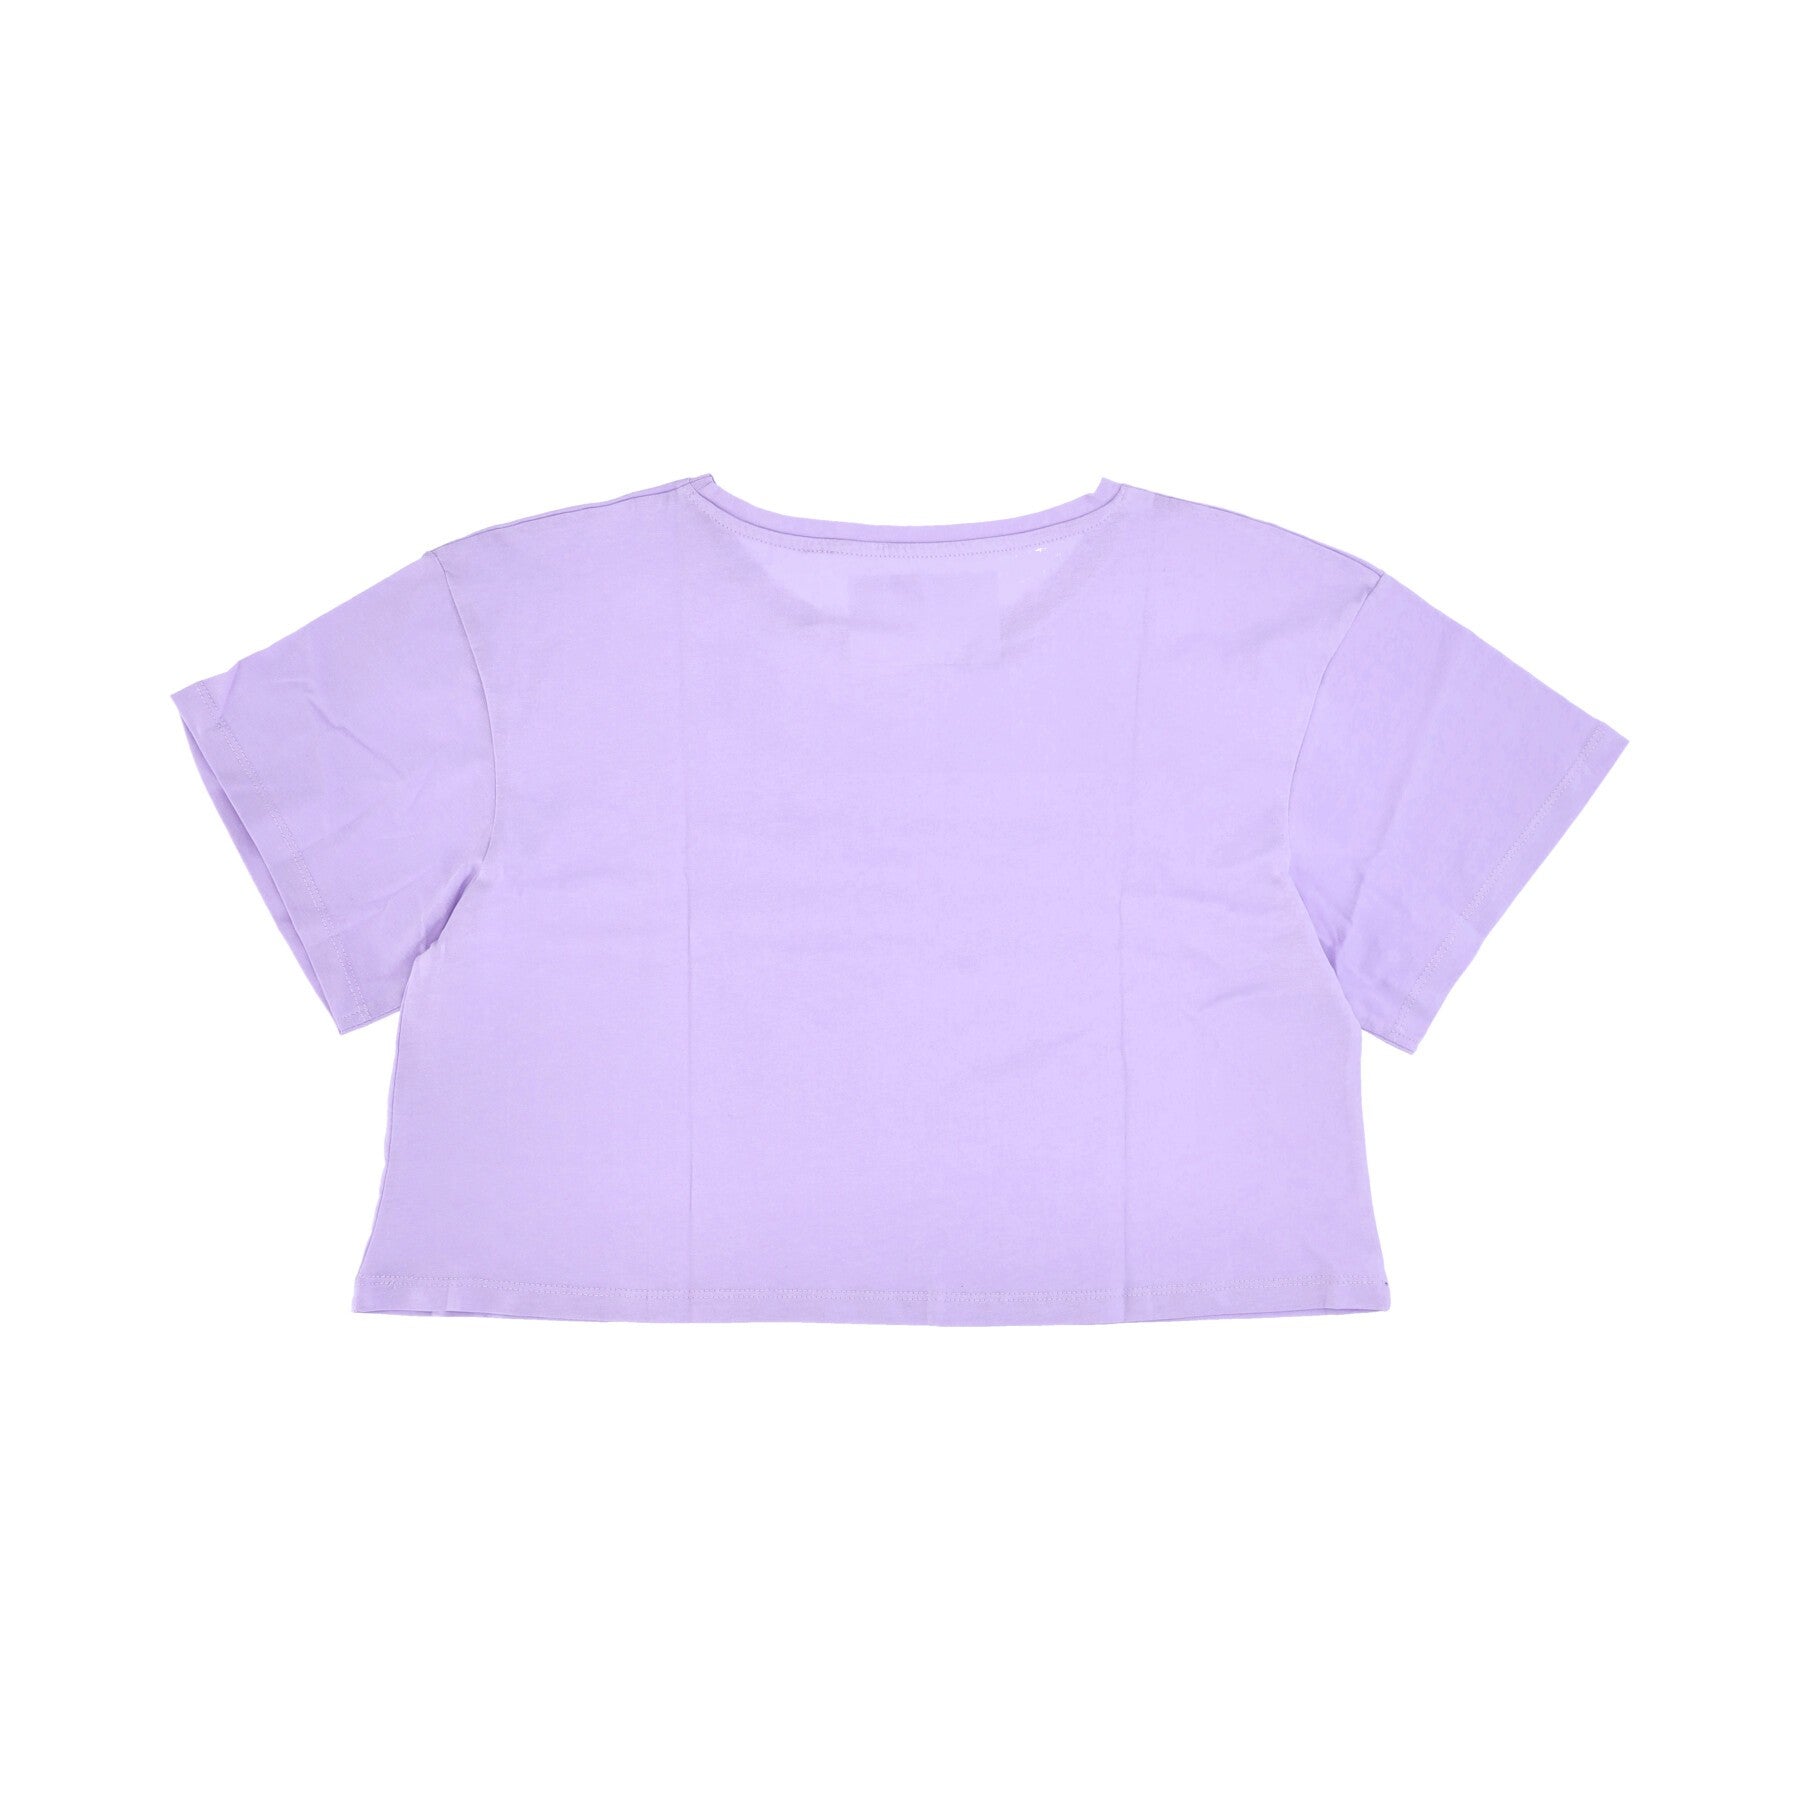 Donatella 19 Pink Women's Cropped T-Shirt